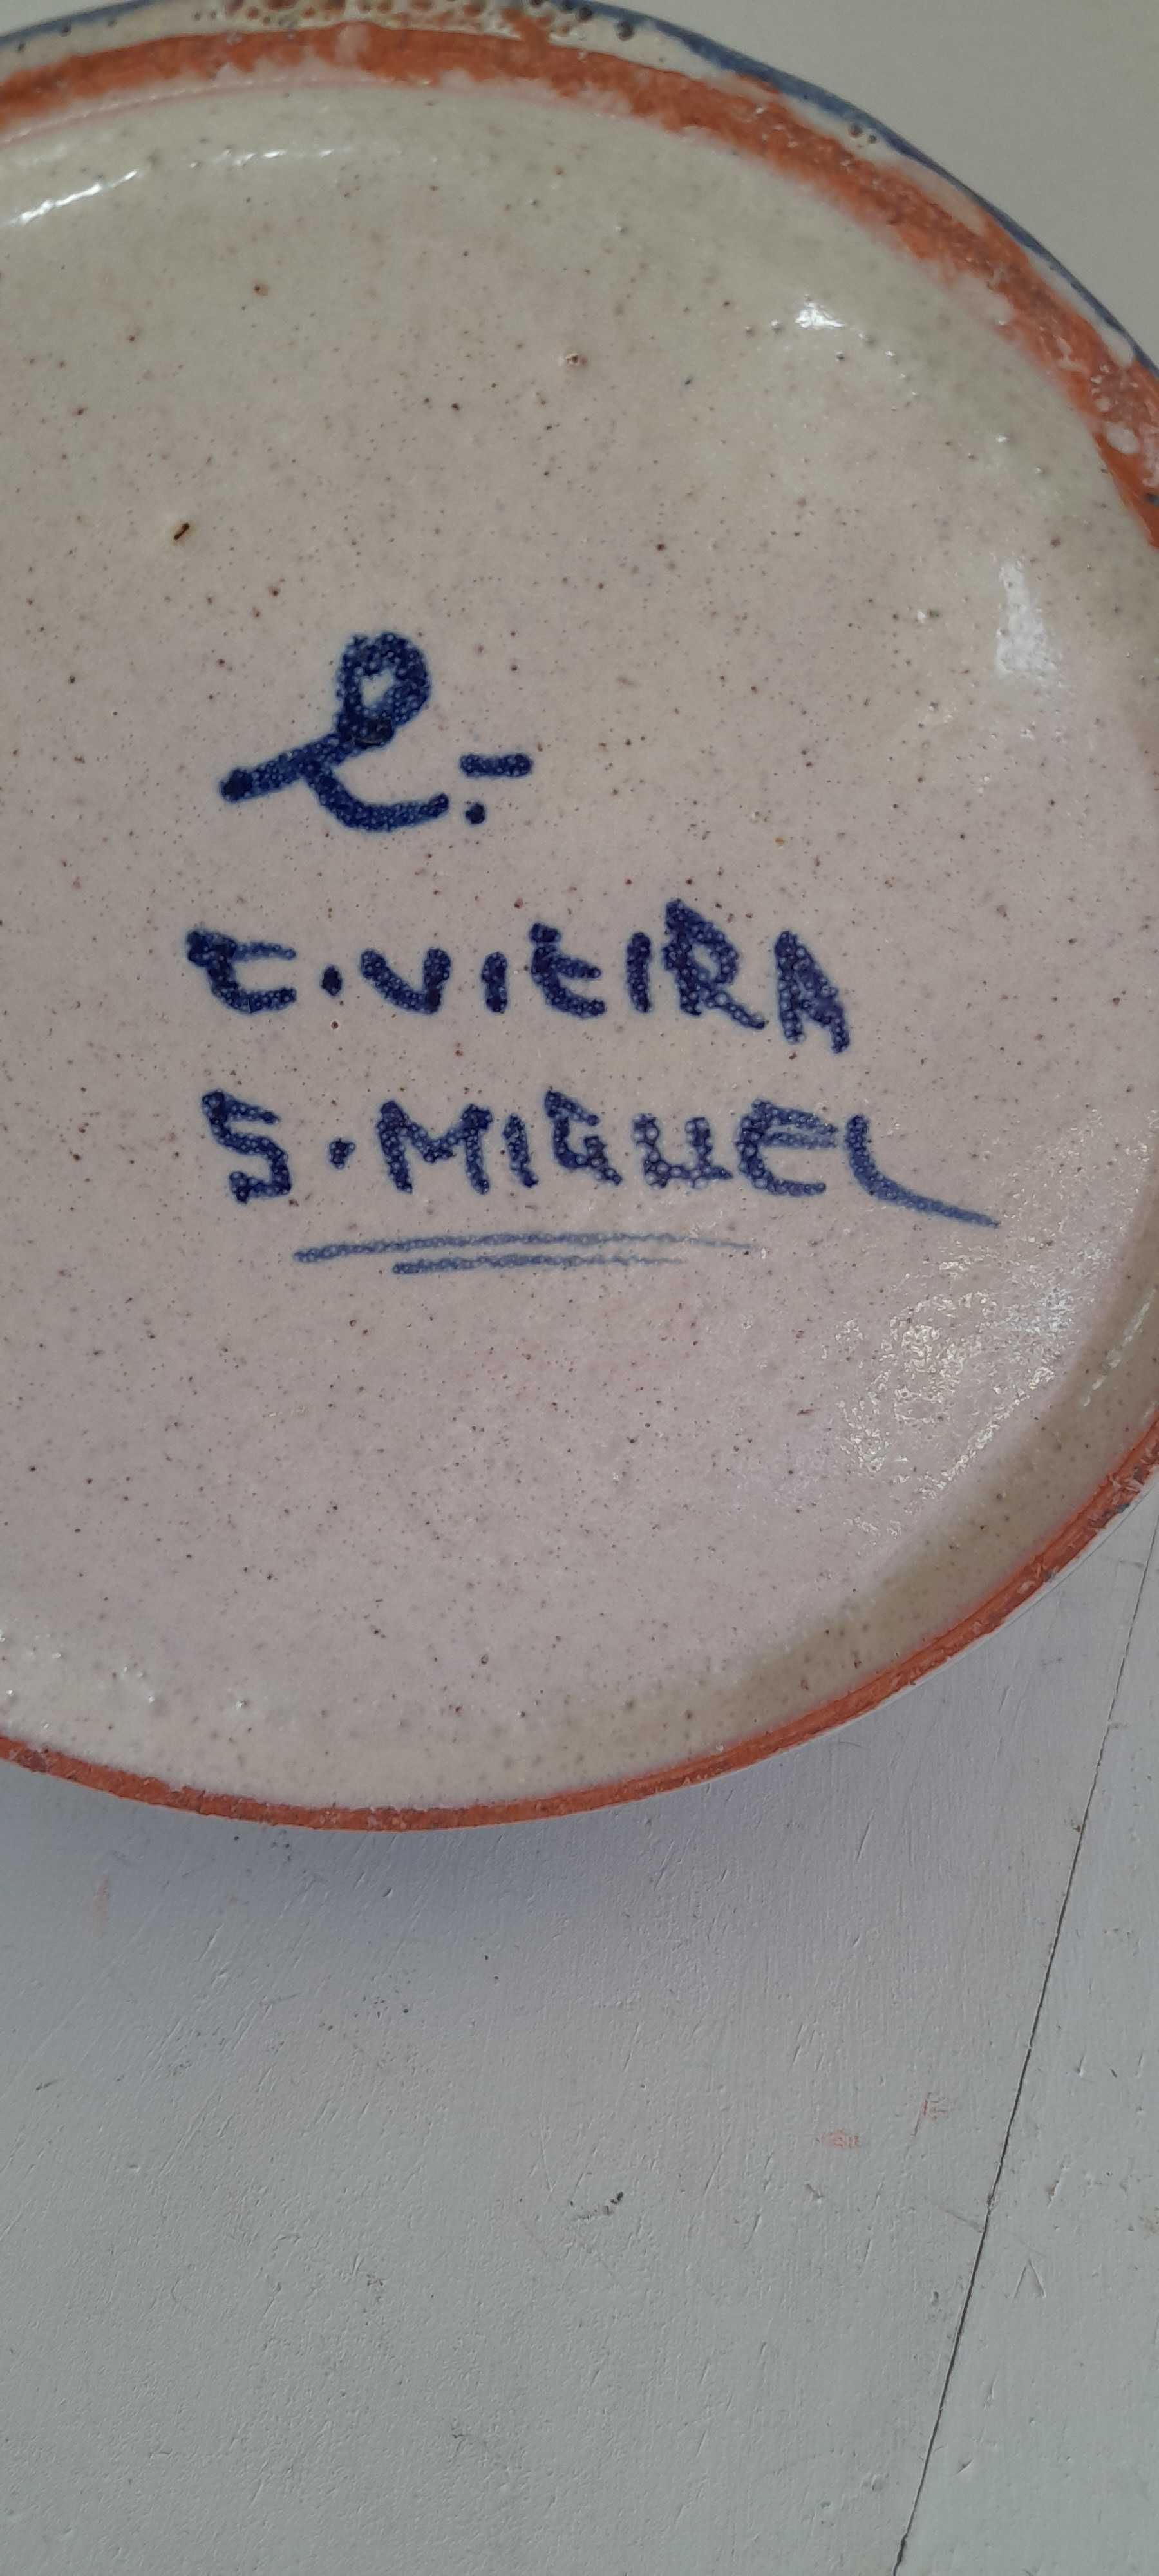 Pote de louça Regional dos Açores, cerâmica Vieira